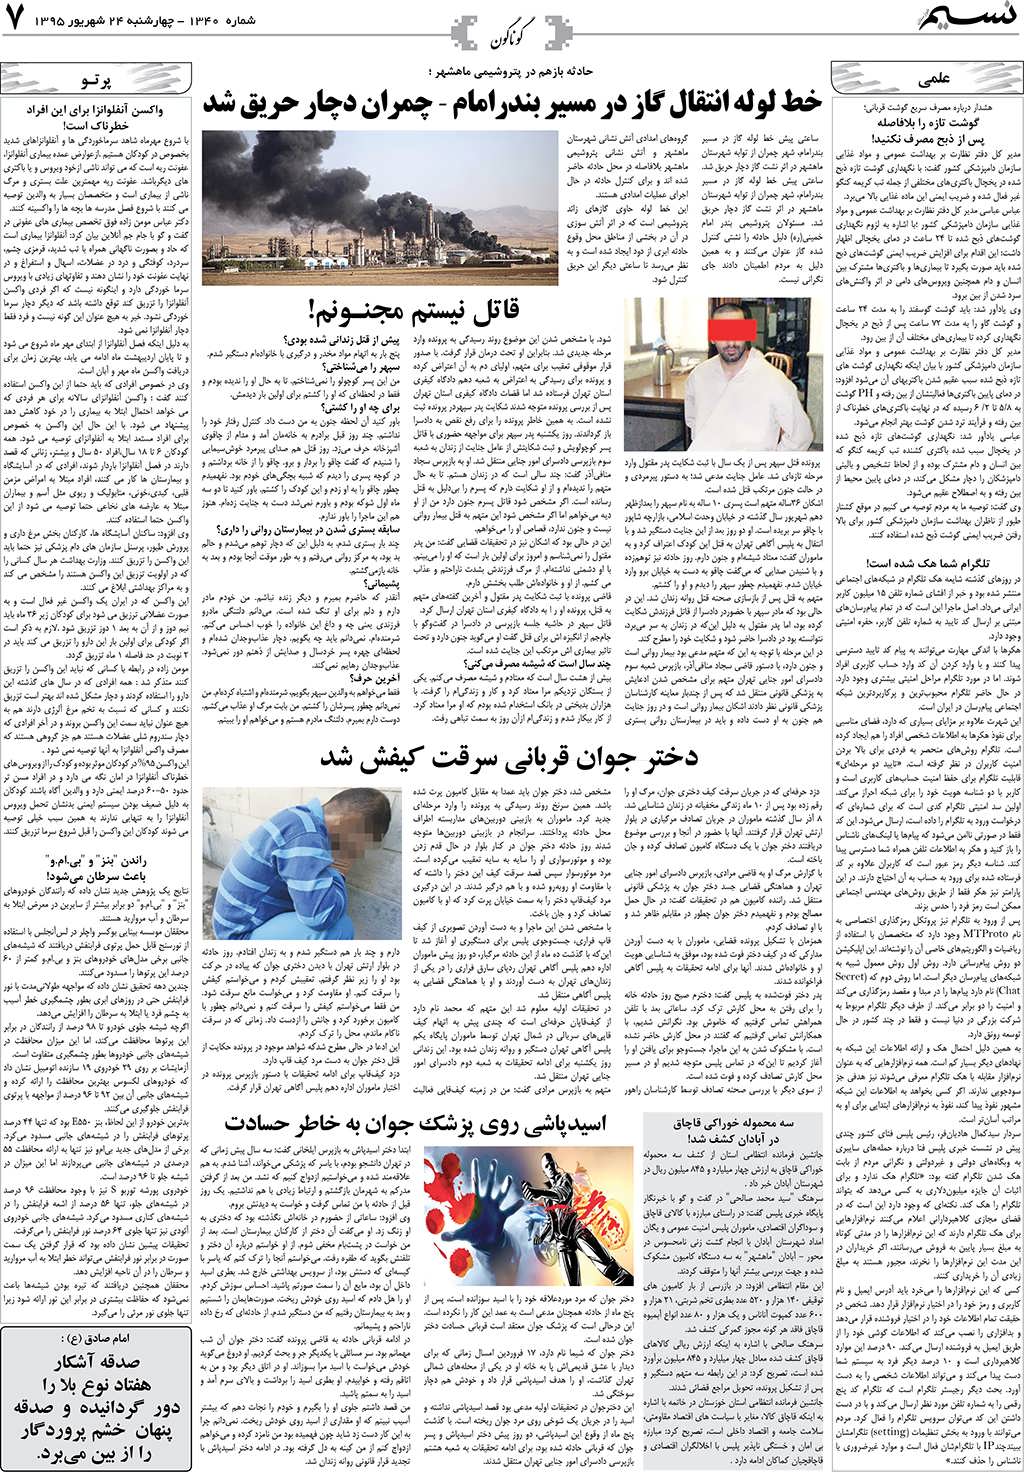 صفحه گوناگون روزنامه نسیم شماره 1340